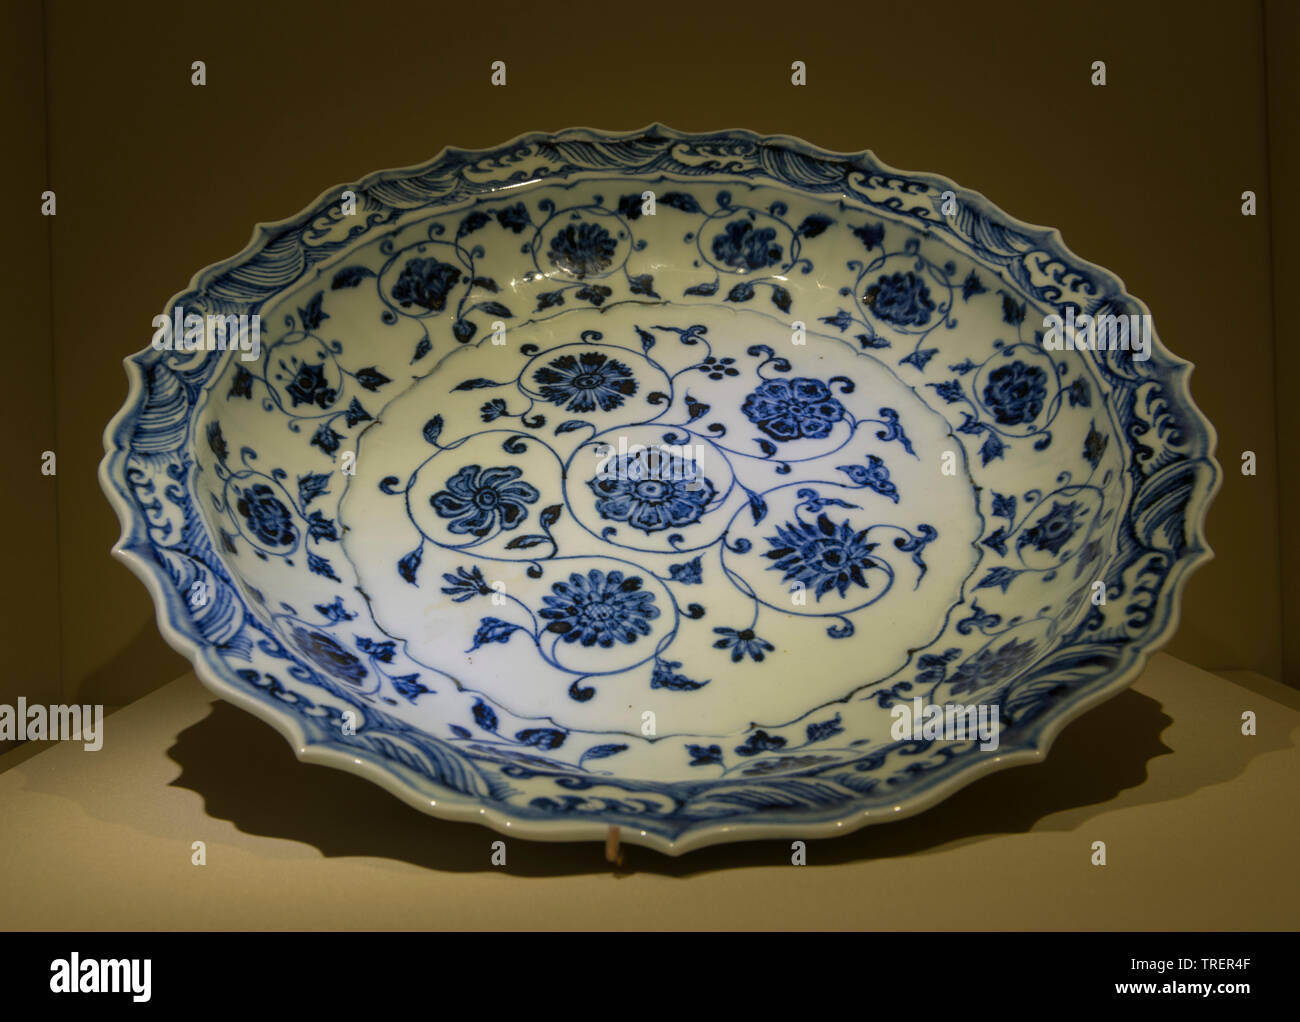 Blau-weiße Platte mit Blume rollen Design der Yongle Ära. Yongle Zeitraum, Ming dynasty, 1403-1424 CE. Nationales Museum für China Stockfoto